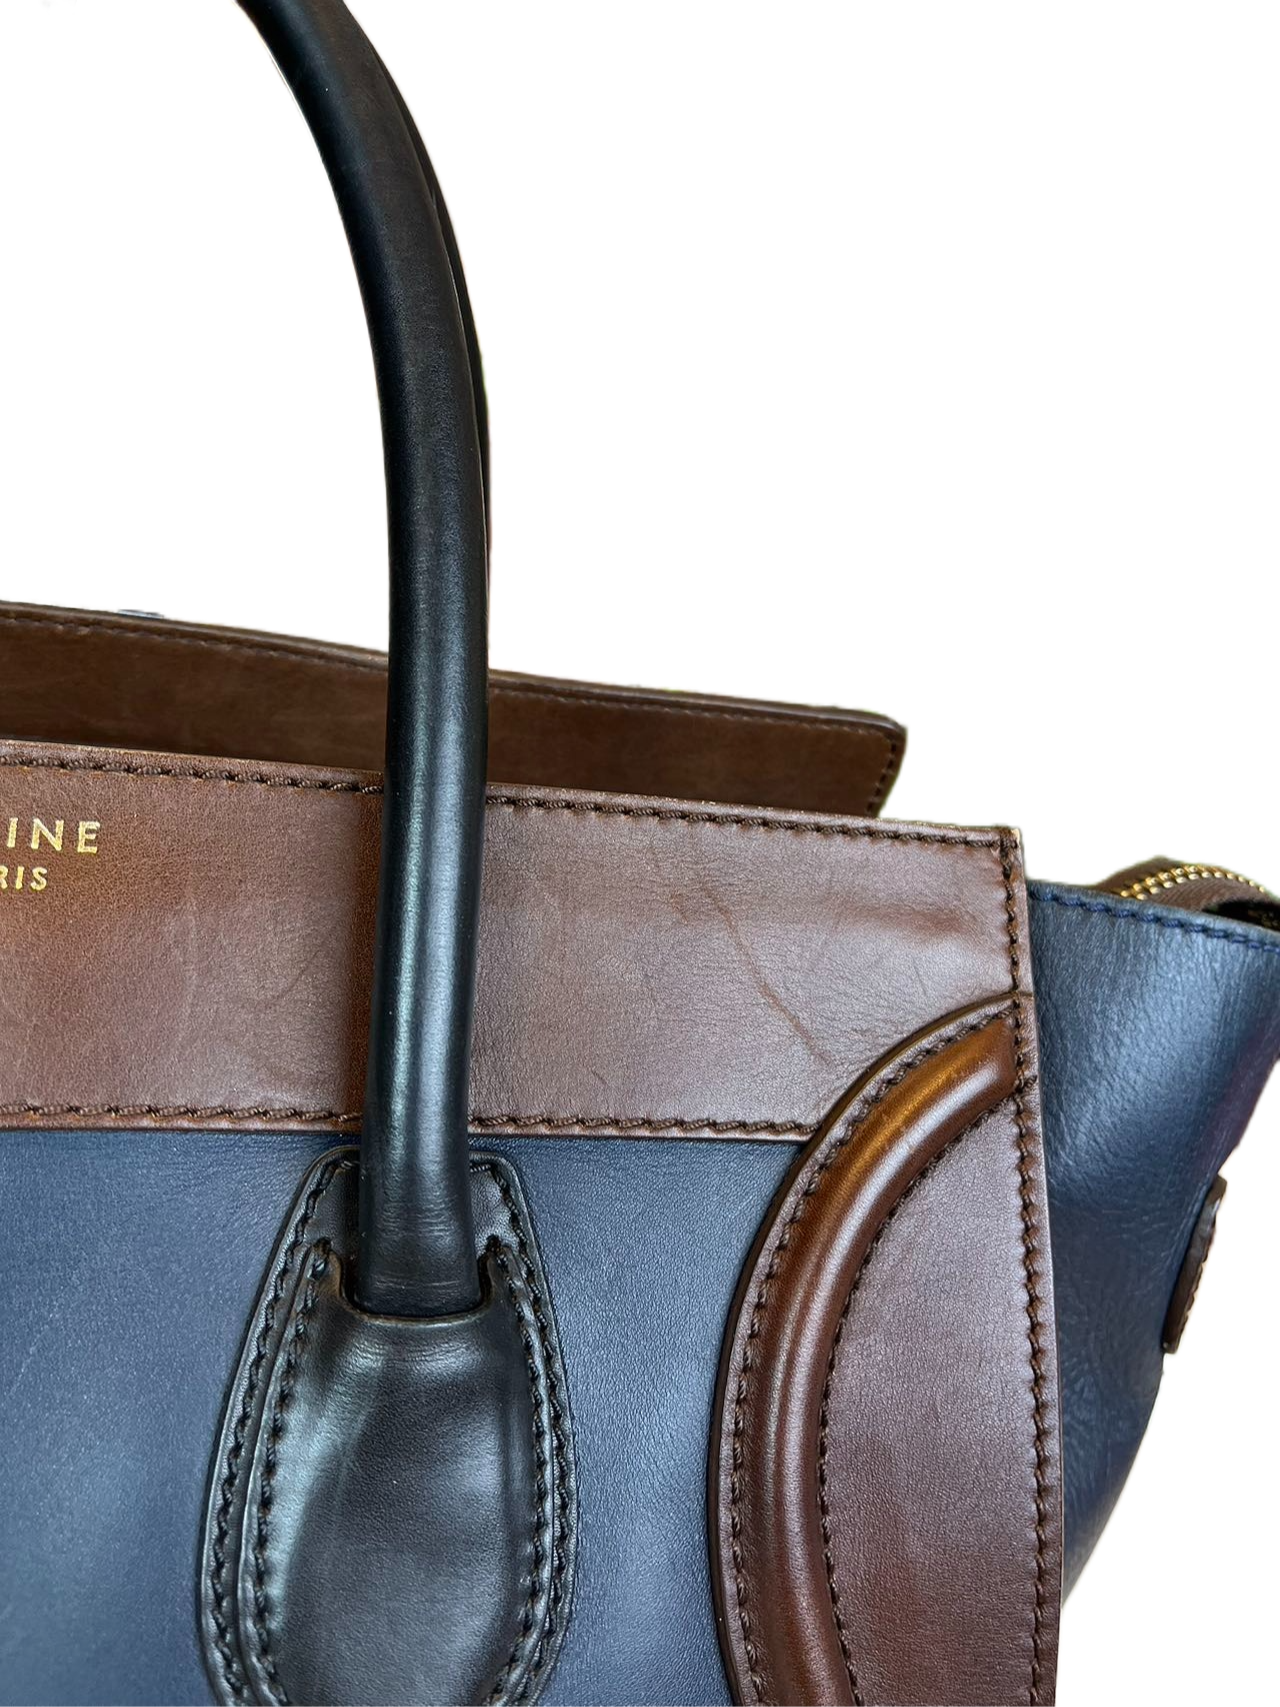 Preloved Celine Mini Luggage Totes Satchel Handbag